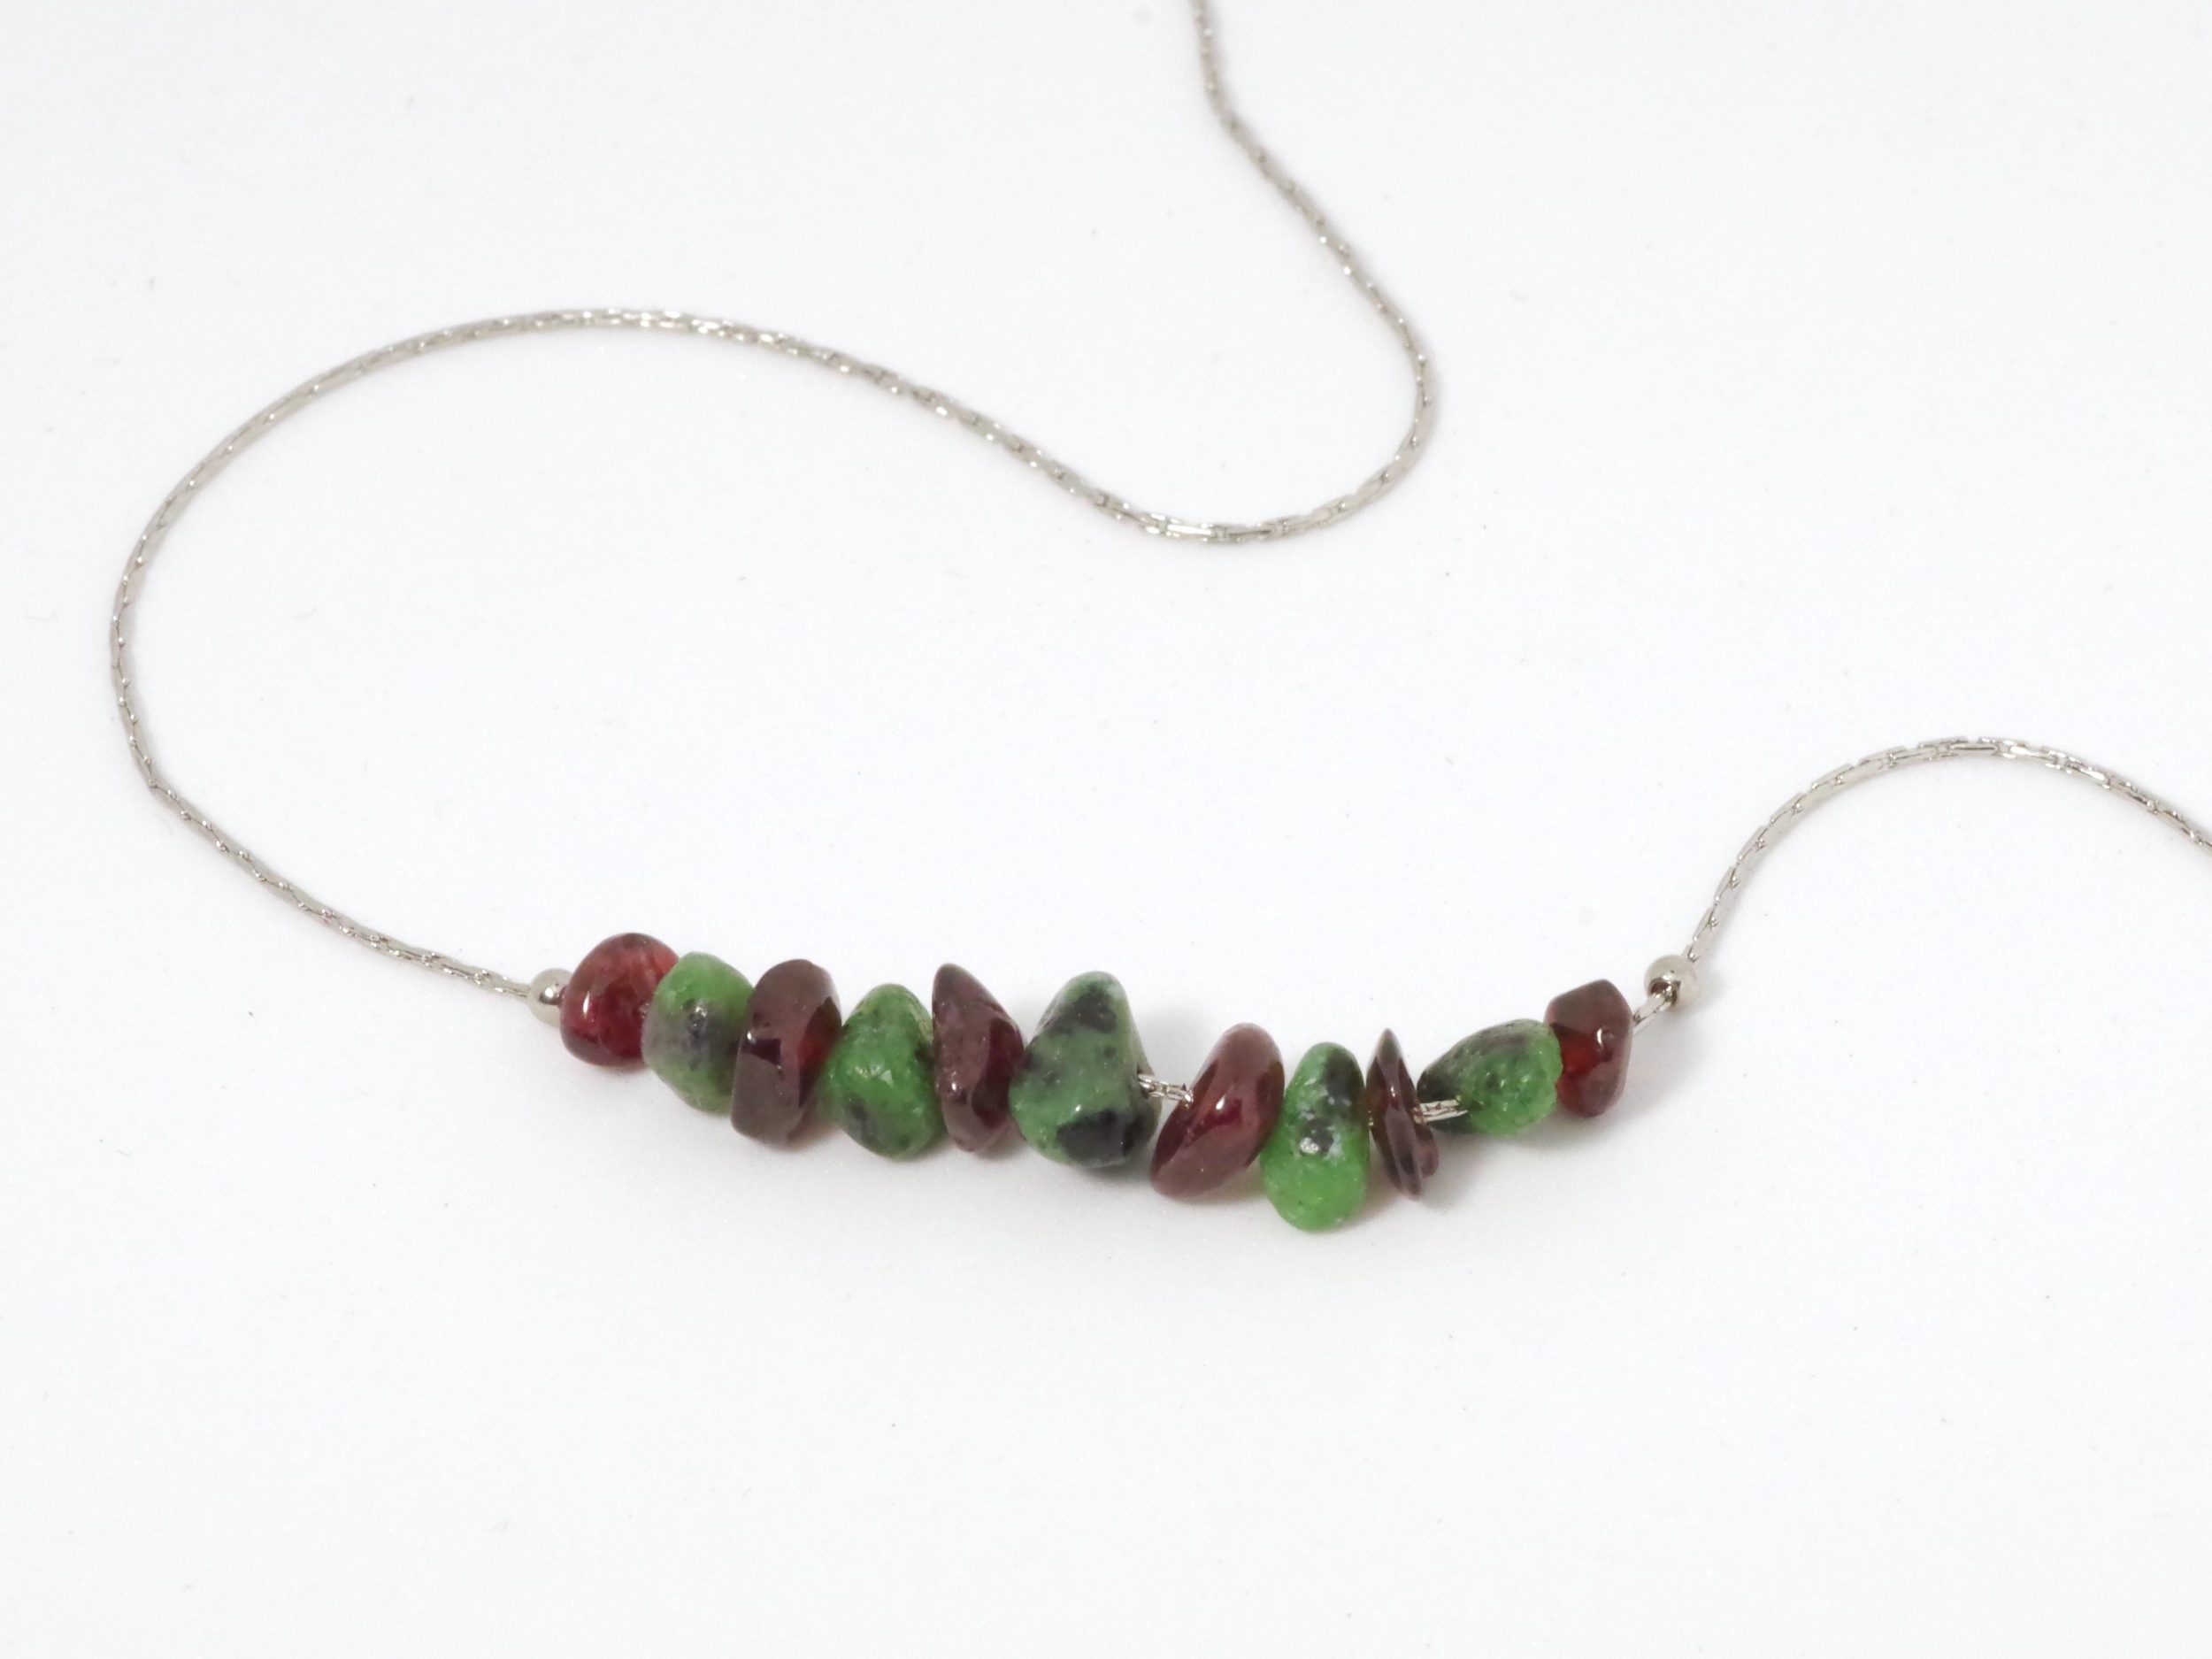 collier de pierres : chaîne fine en inox et gemmes vertes et rouges